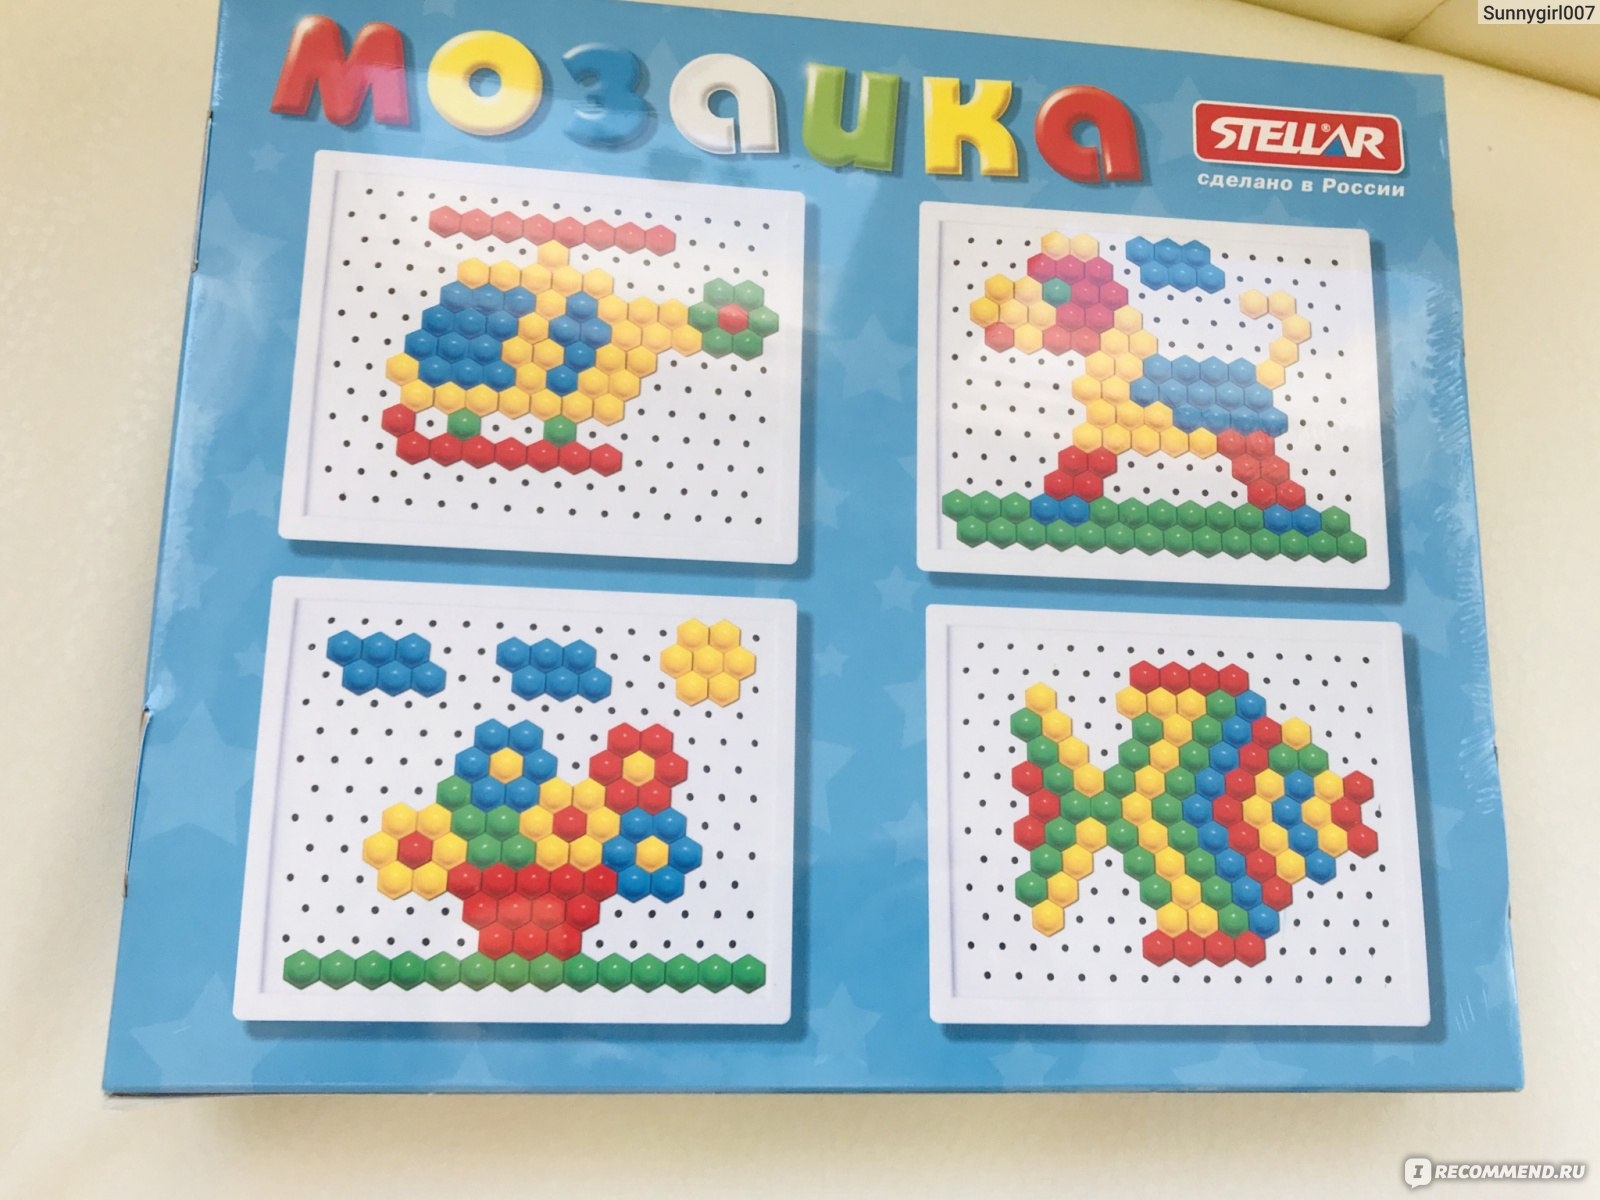 Схема мозаики для детей. Мозаика Стеллар схемы. Мозаика для детей. Схемы для мозаики для детей. Мозаика для дошкольников.